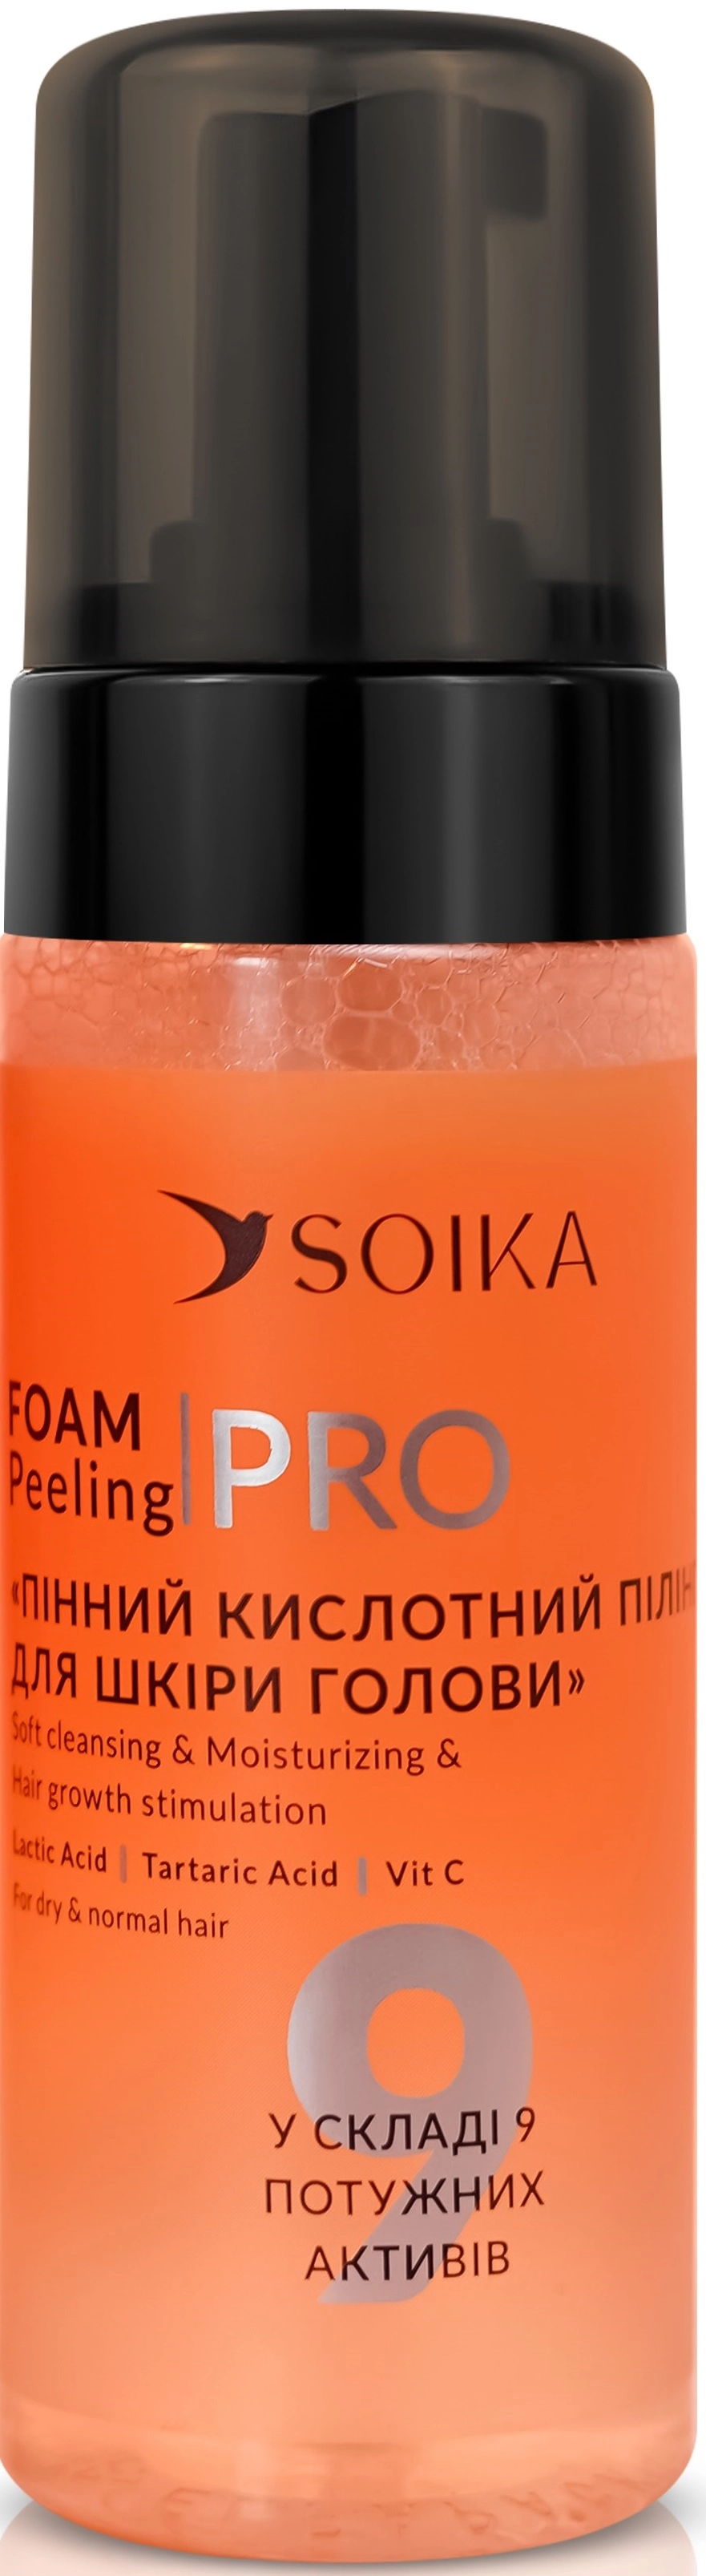 Пілінг пінний для шкіри голови з молочною кислотою "М'яке очищення та зволоження" - Soika Foam Peeling PRO For Dry & Normal Hair, 150 мл - фото N1